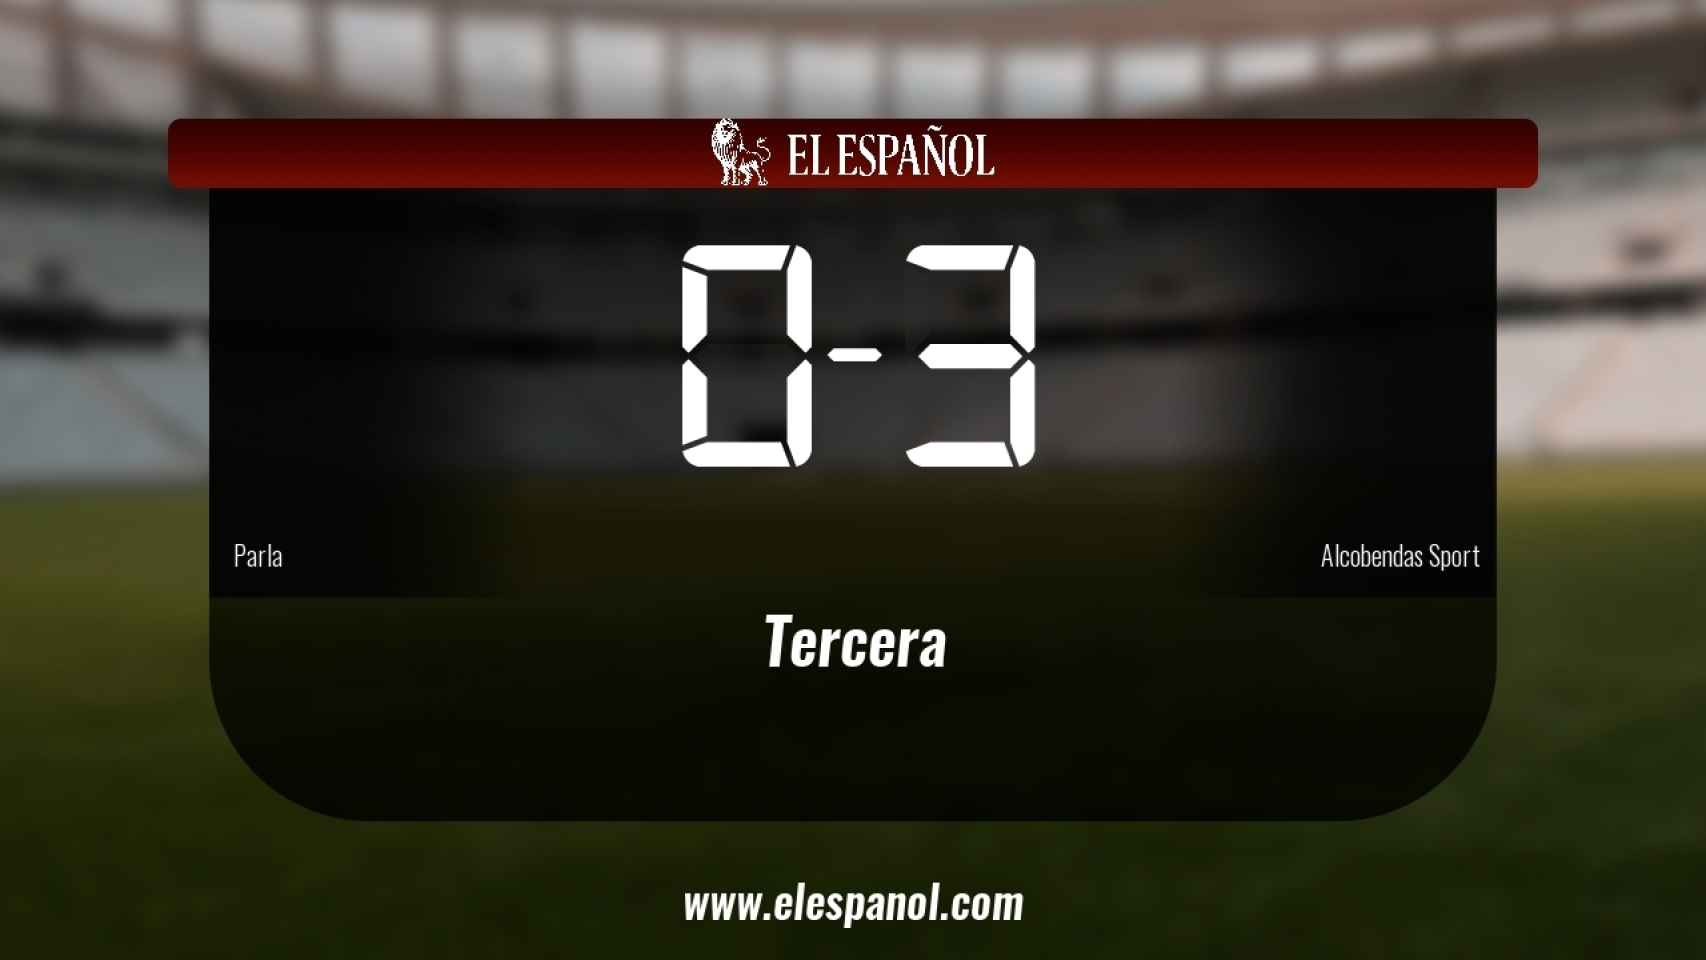 El Parla cae derrotado frente al Alcobendas Sport por 0-3